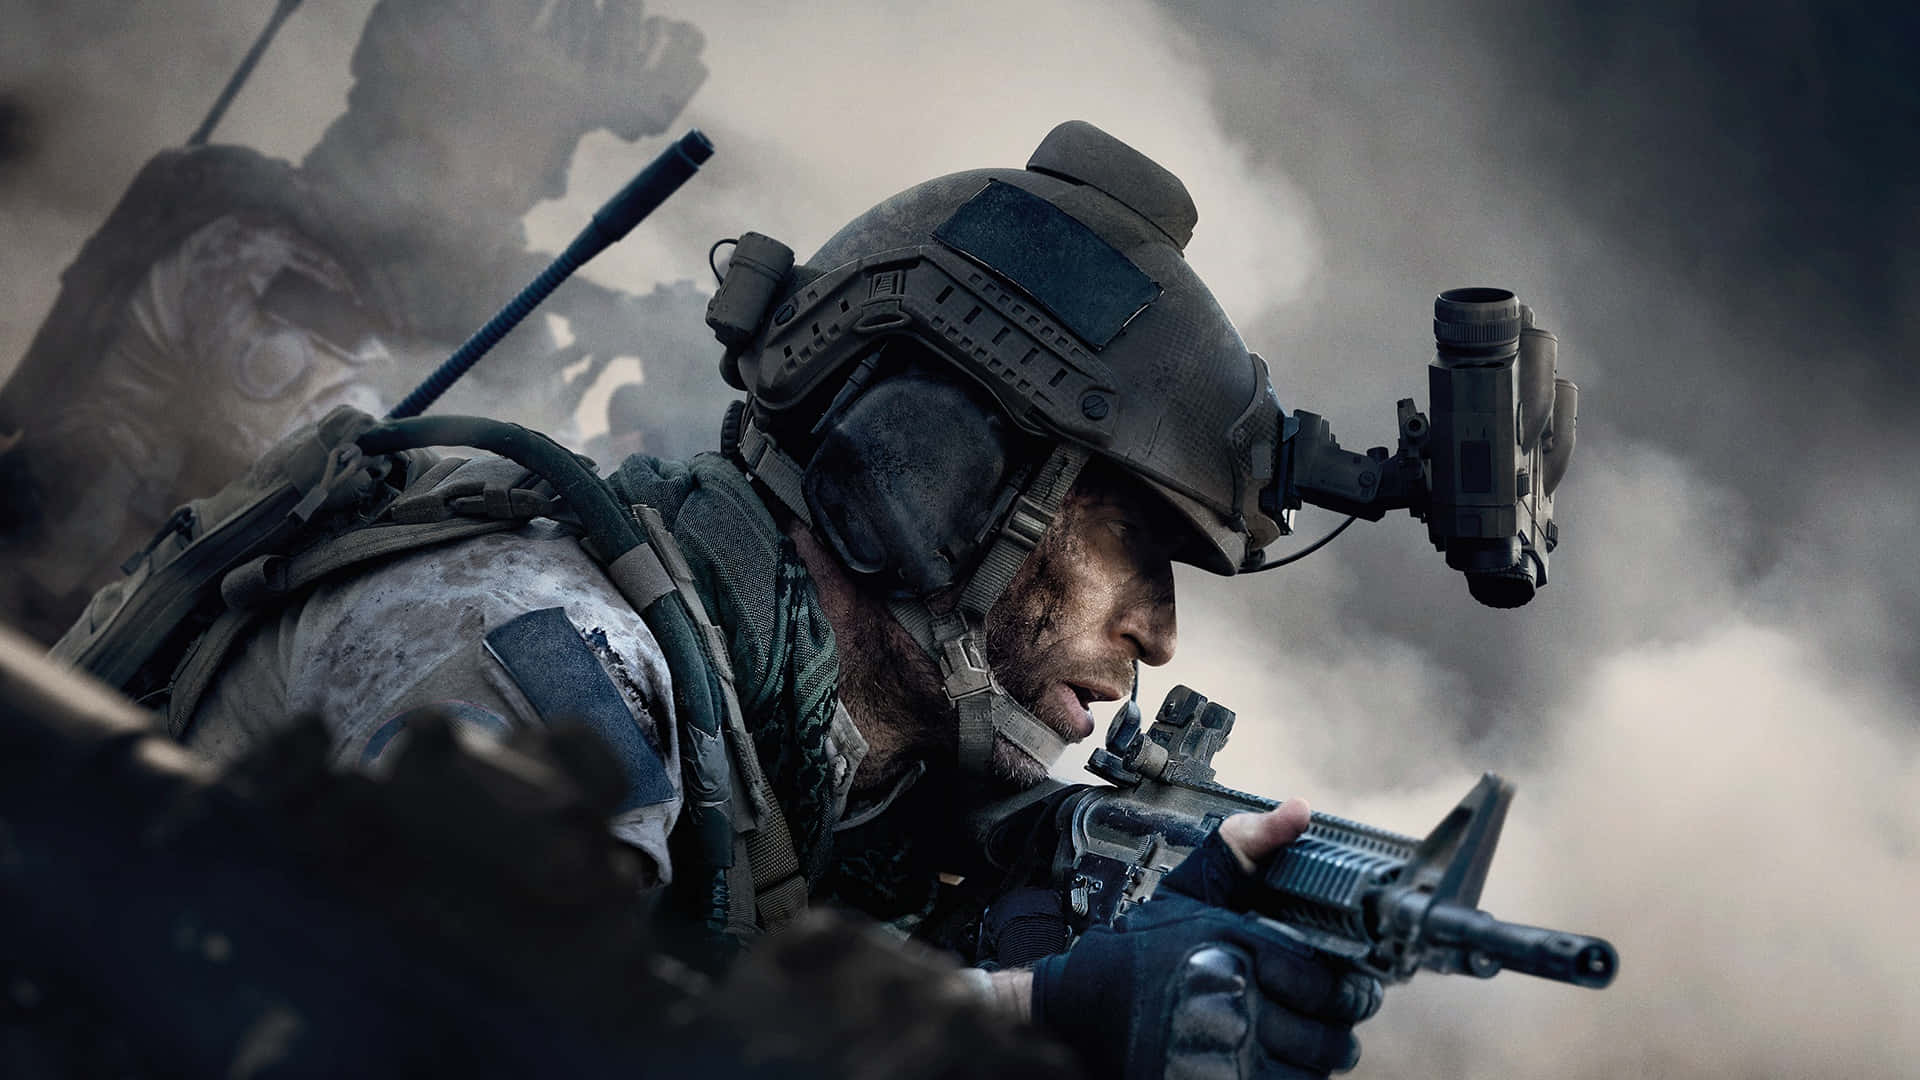 A warrior rises amongst a smokey battlefield in Call of Duty Modern Warfare HD Wallpaper